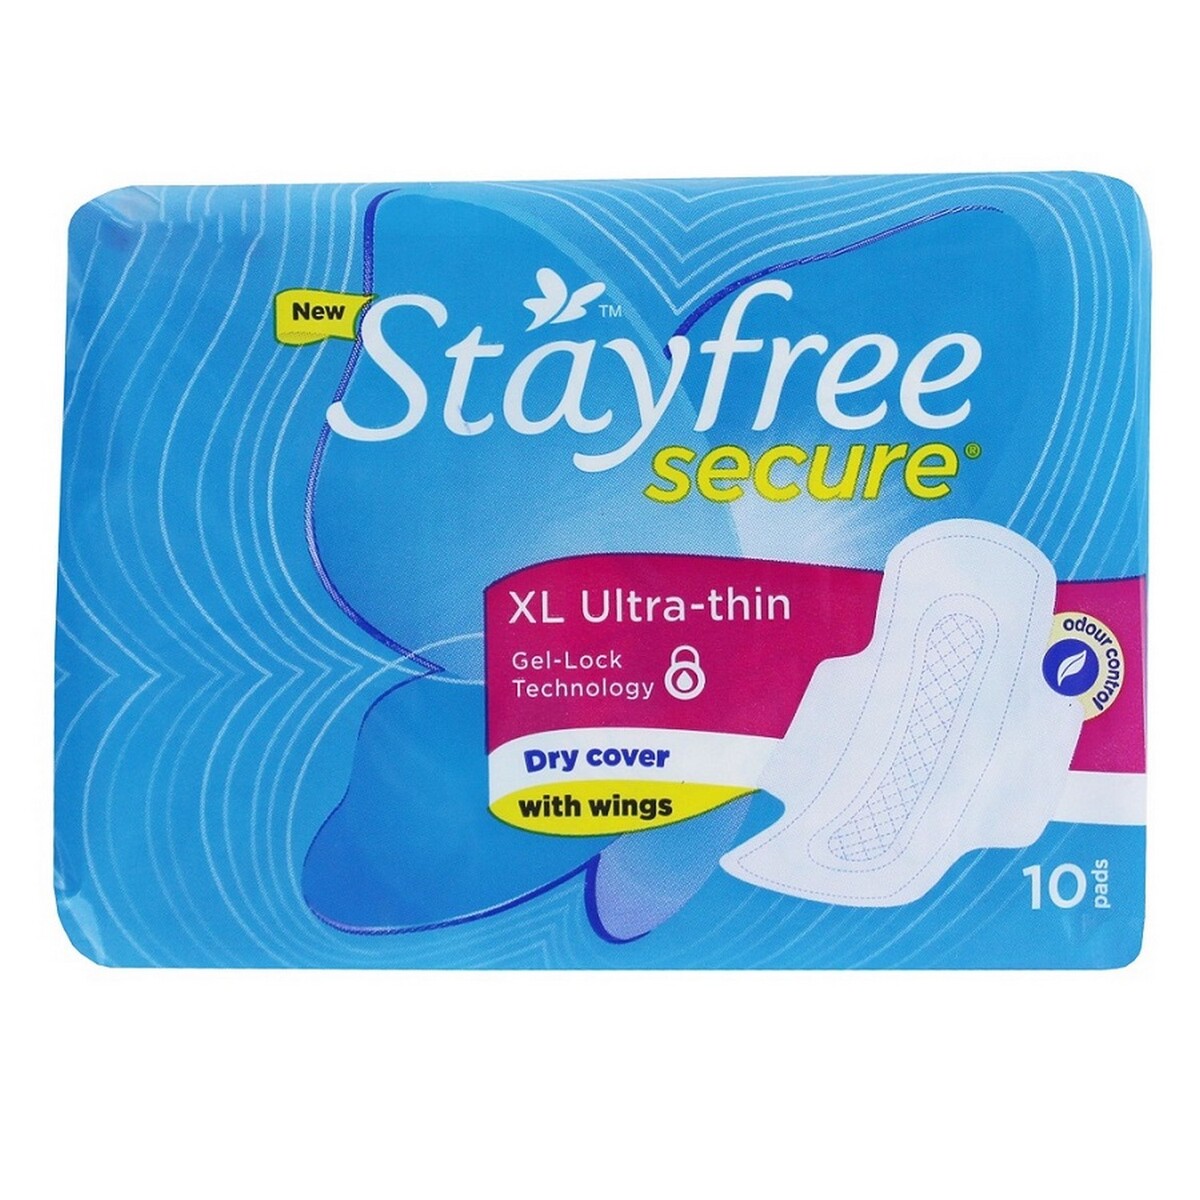 Stayfree Secure XL UltraThin 10's